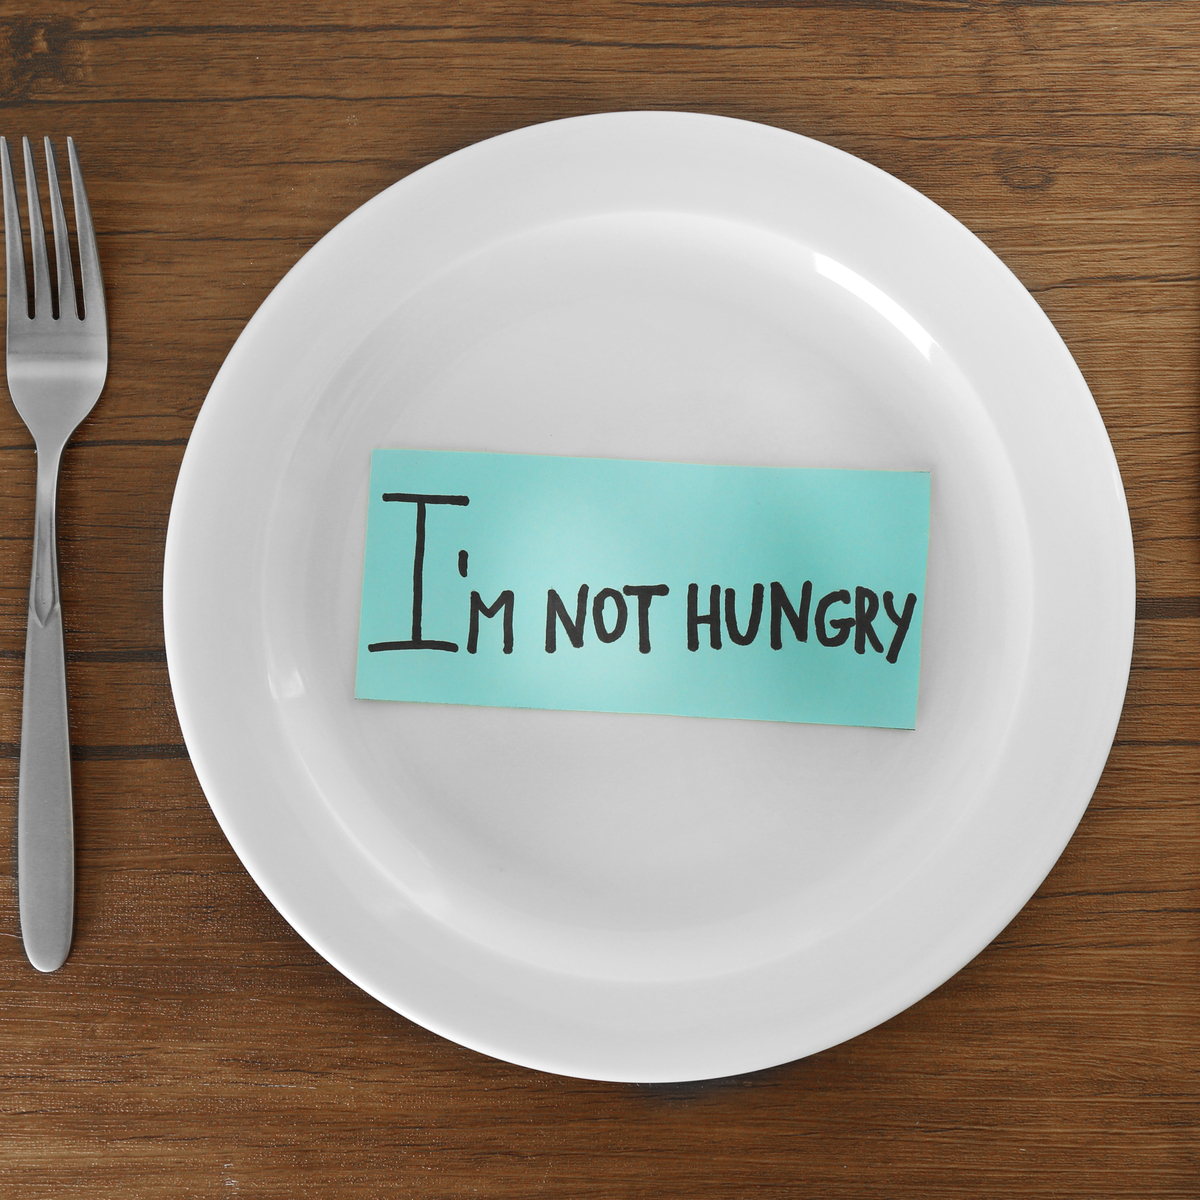 Как переводится hungry